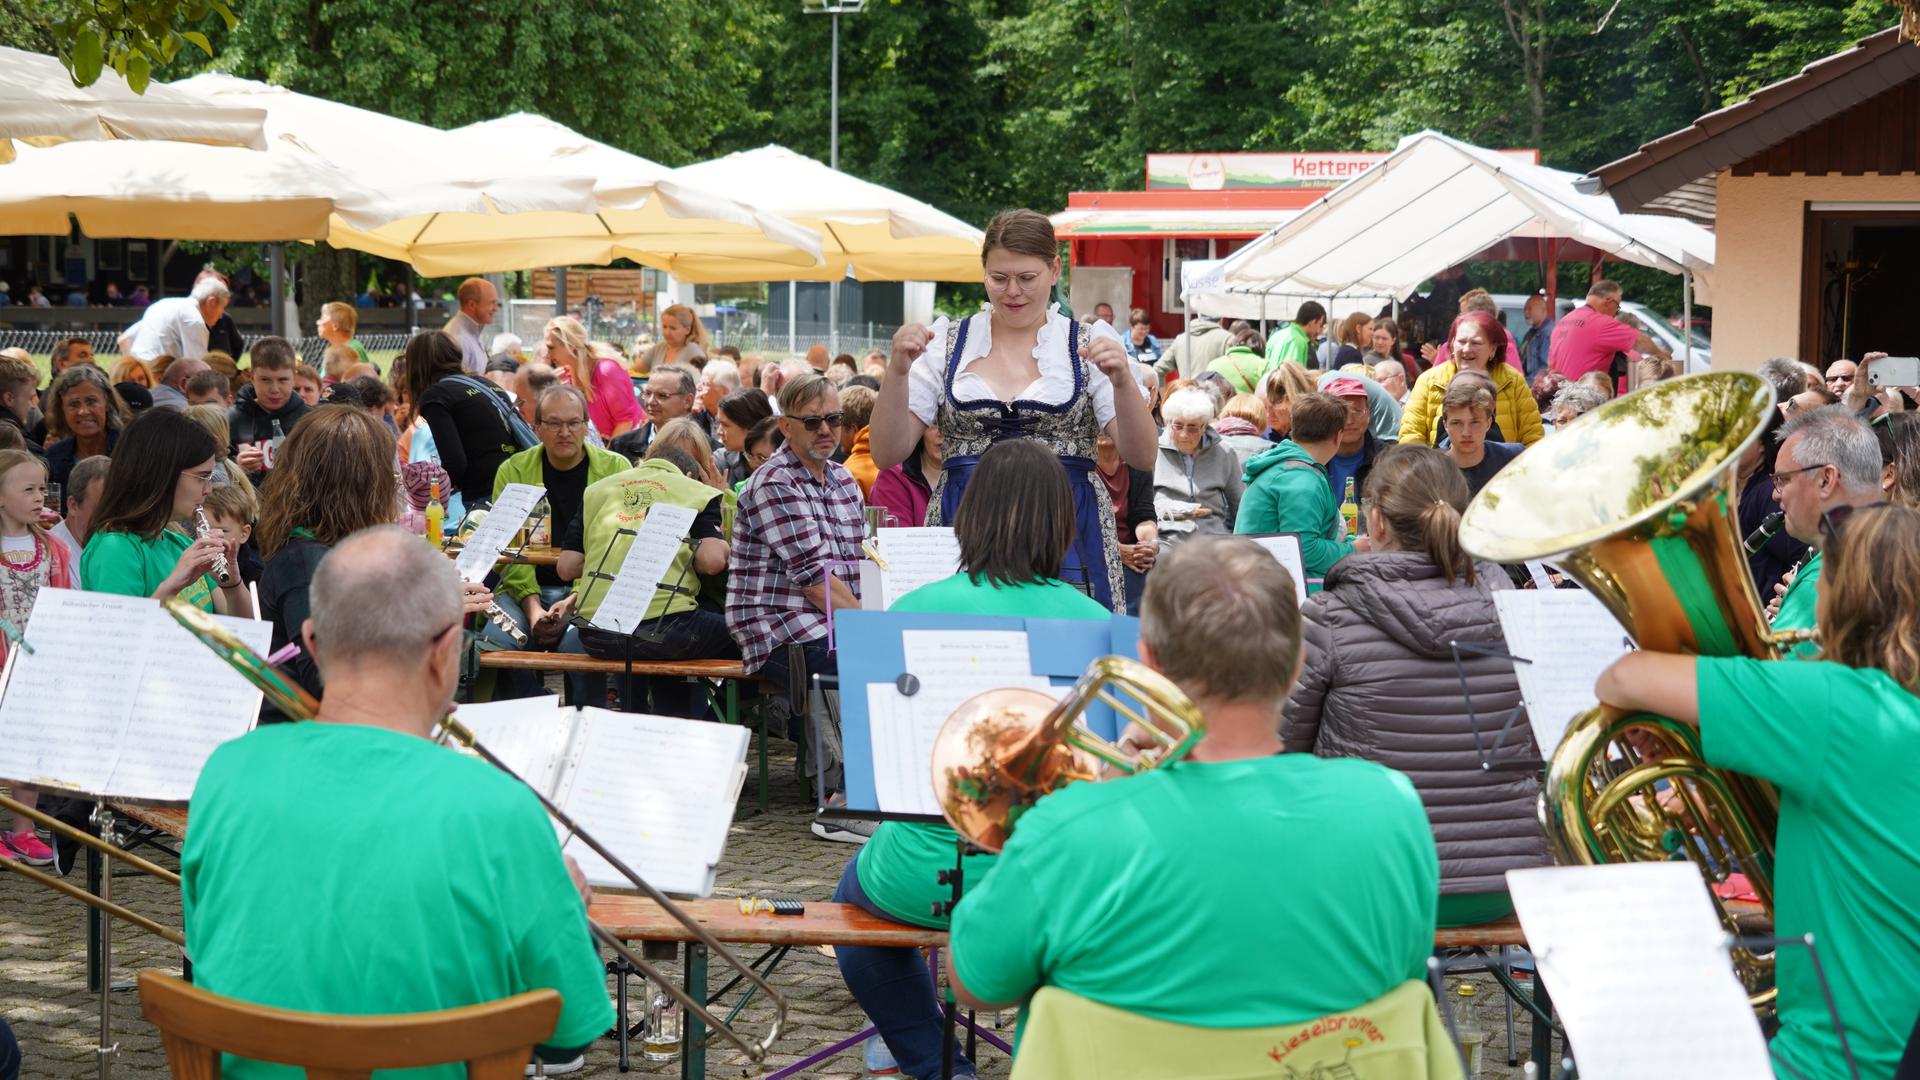 Musik im Grünen: Beim Bockbierfest der Kieselbronner Kleintierzüchter spielte die Hasenkappelle unter Anna-Lena Schestags Leitung sowohl Traditionelles als auch Modernes.